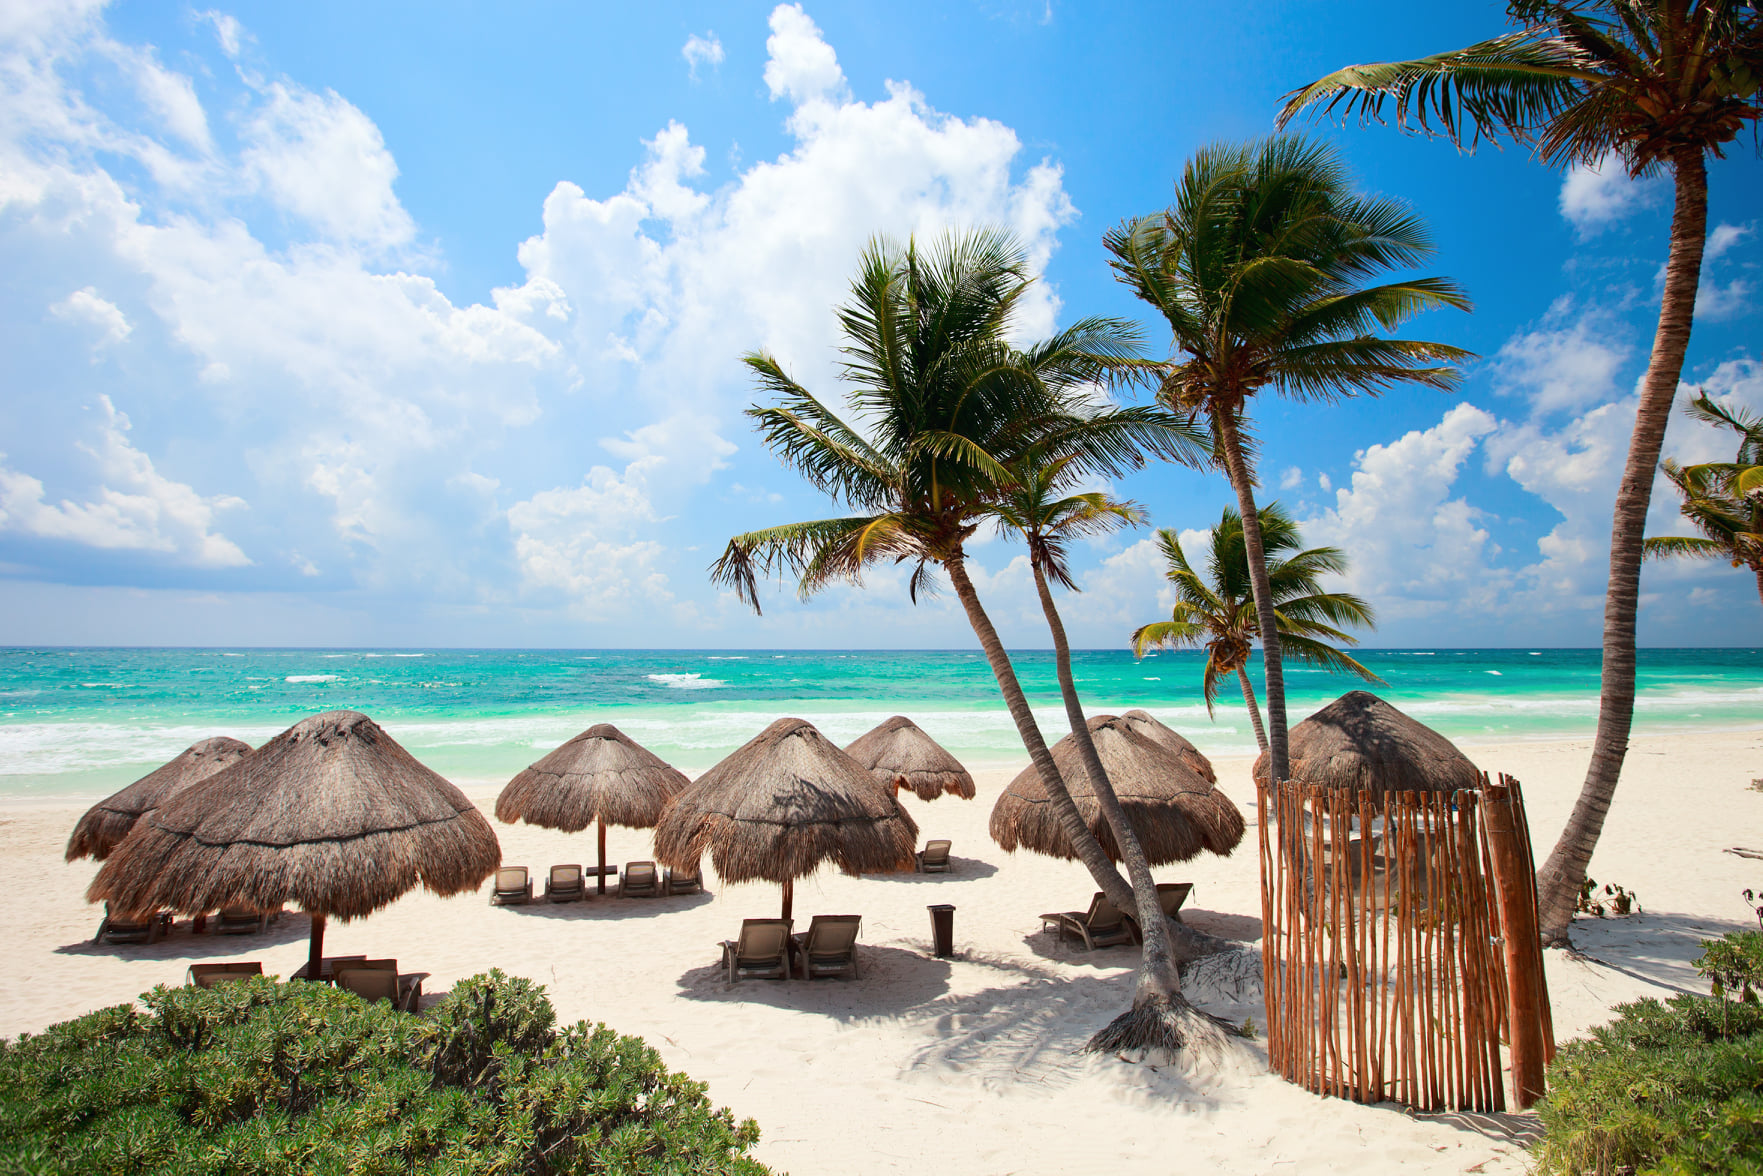 Những bãi biển đẹp như thiên đường ở Mexico - Ảnh: BlueOrange Studio/Shutterstock